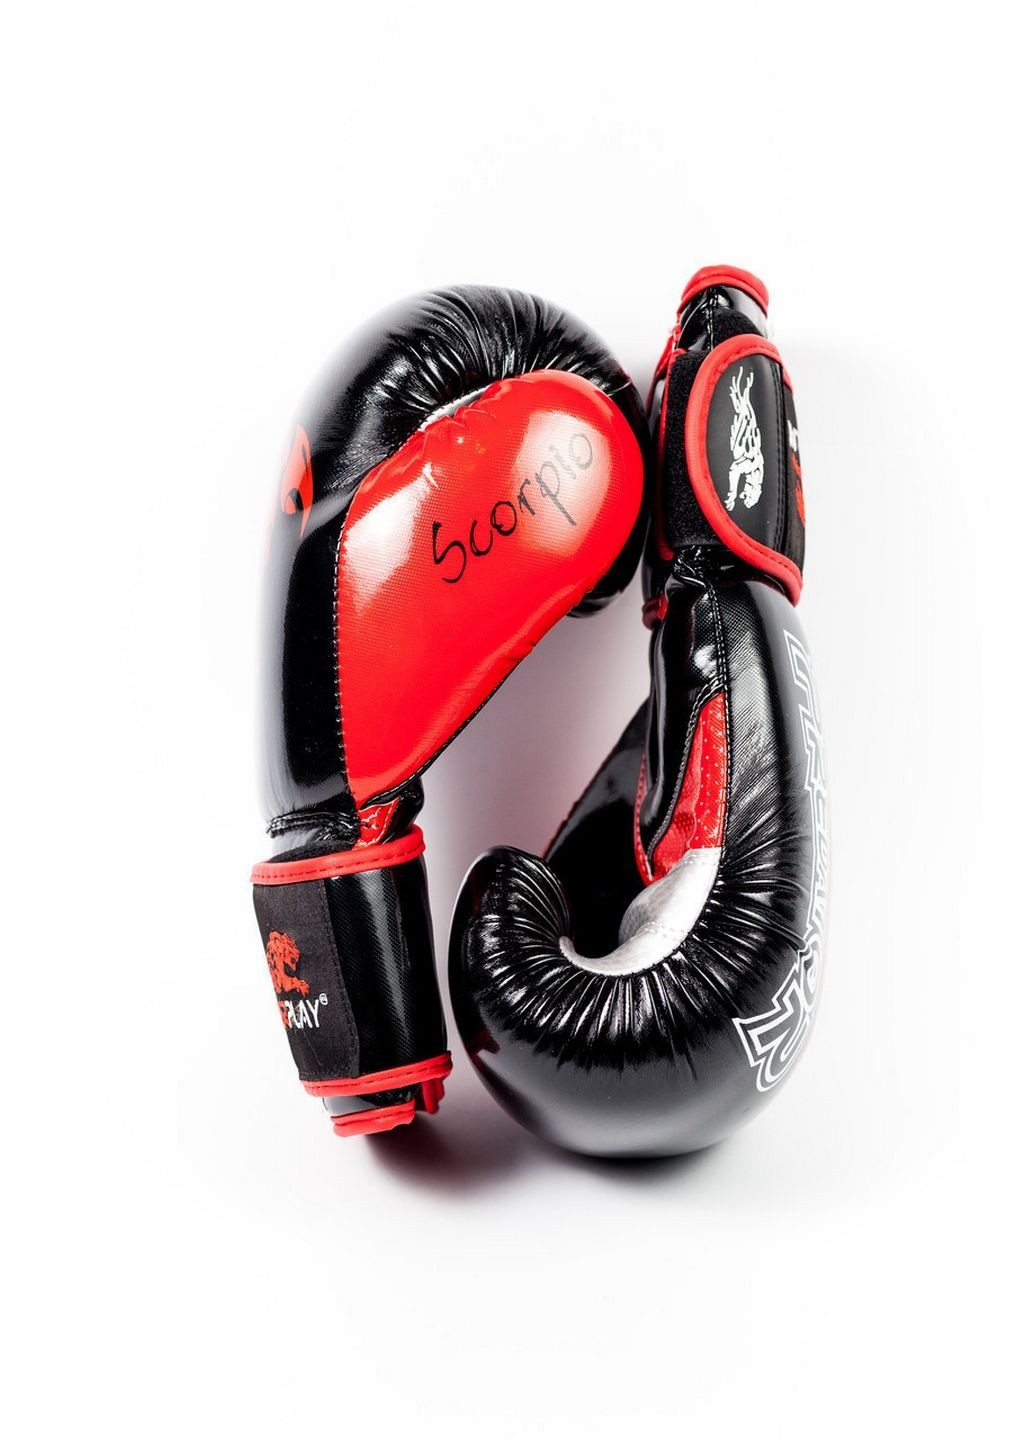 Боксерские перчатки PowerPlay (282589045)